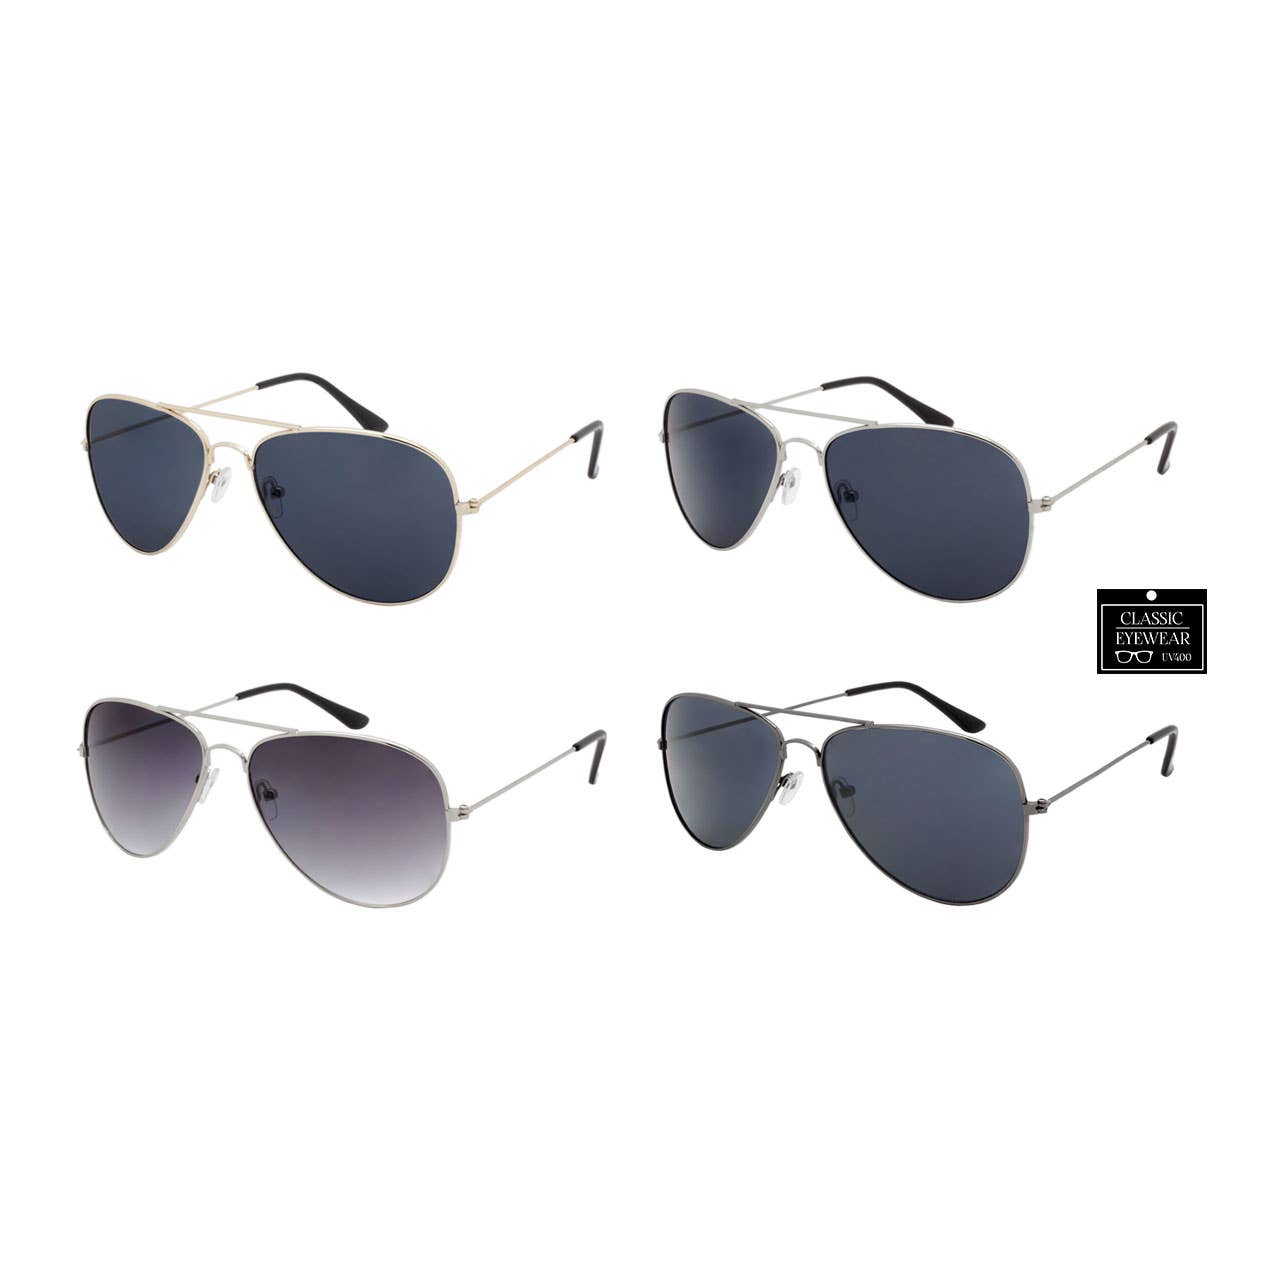 Unisex Aviator Sunglasses-Apparel & Accessories > Clothing Accessories > Sunglasses-Quinn's Mercantile